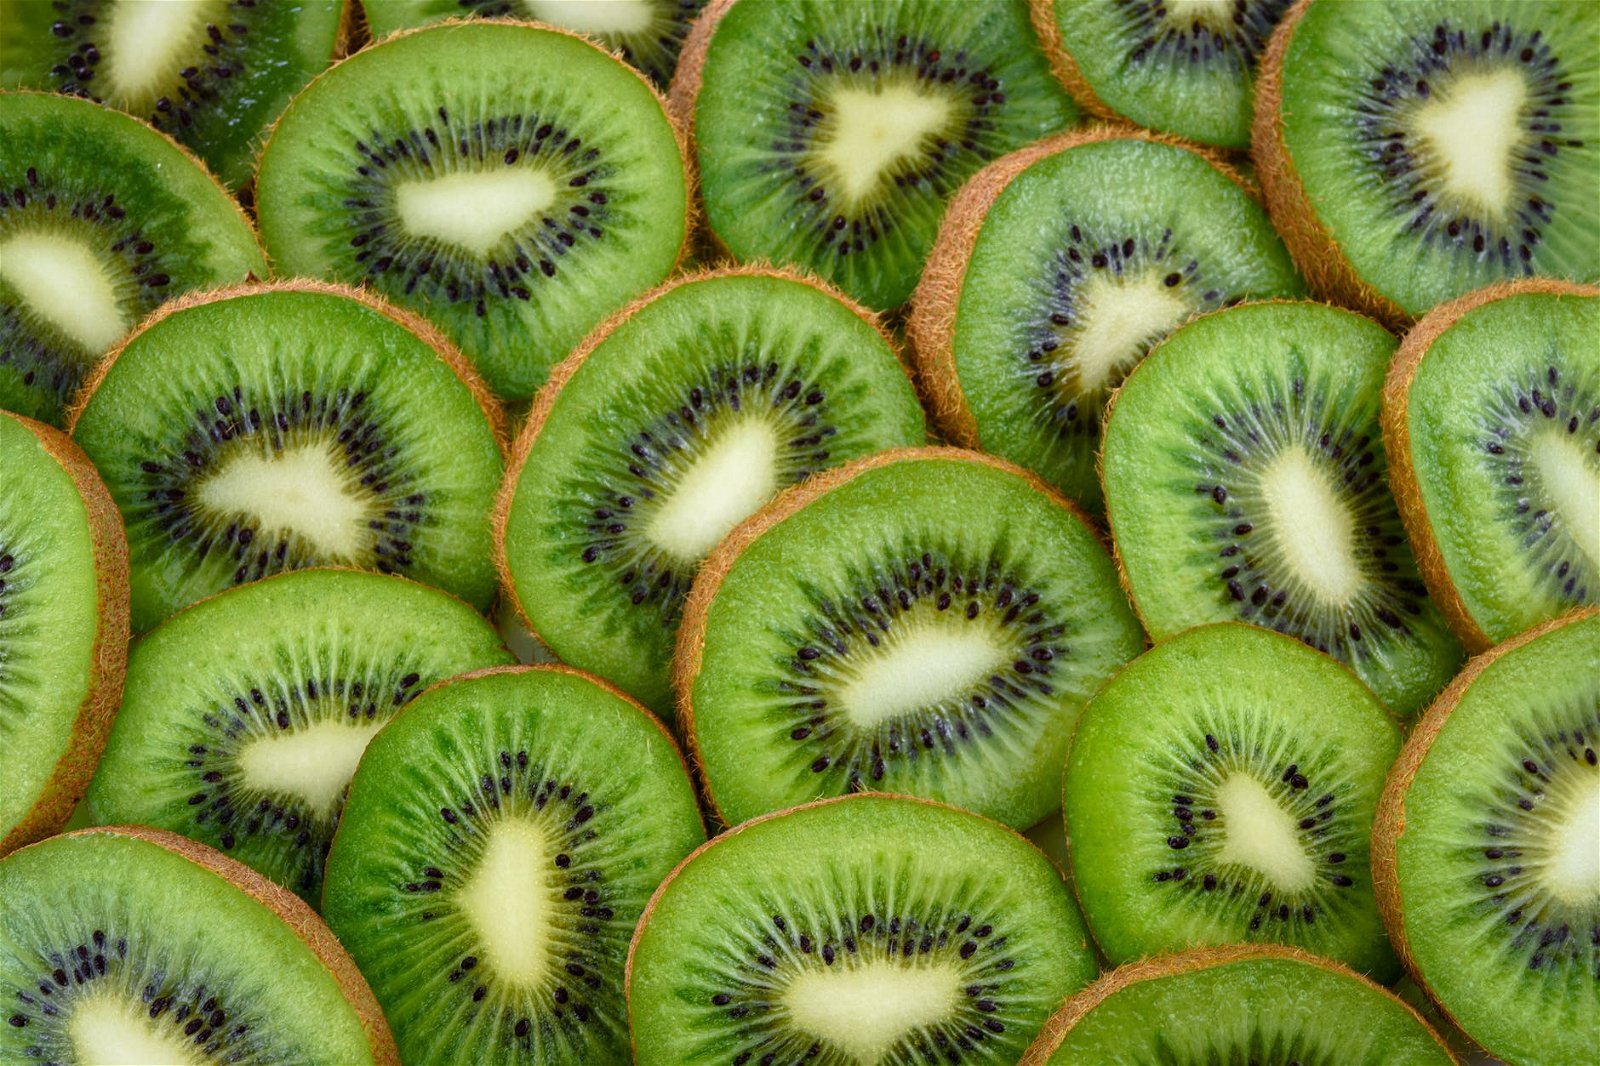 Manfaat Kiwi untuk Kesehatan. Apa Aja Sih?